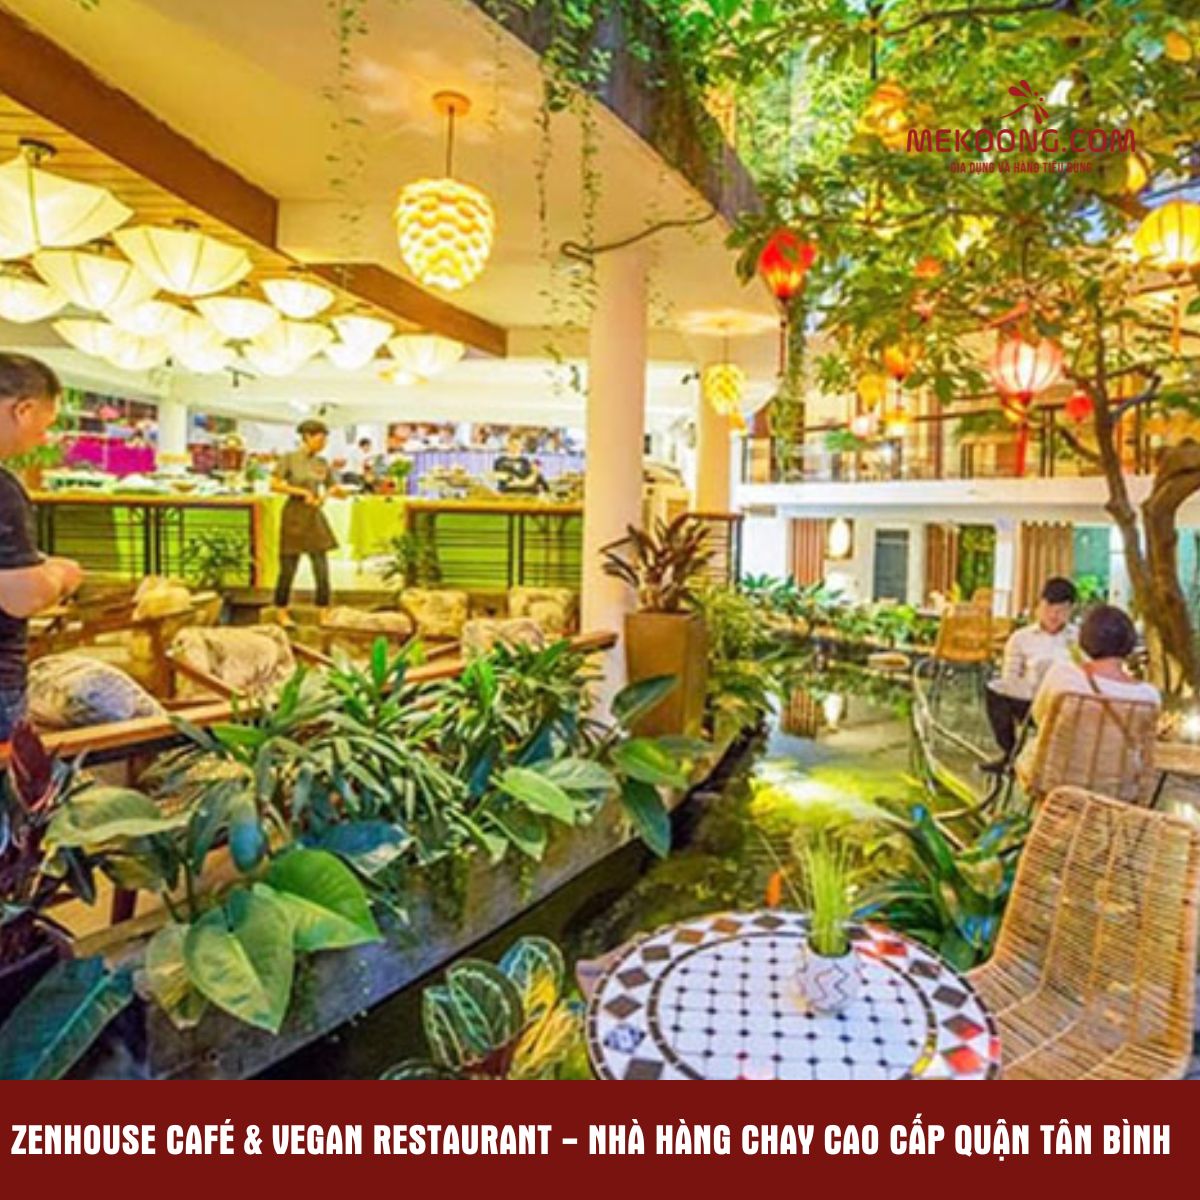 Zenhouse Café & Vegan Restaurant - Nhà hàng chay cao cấp quận Tân Bình 